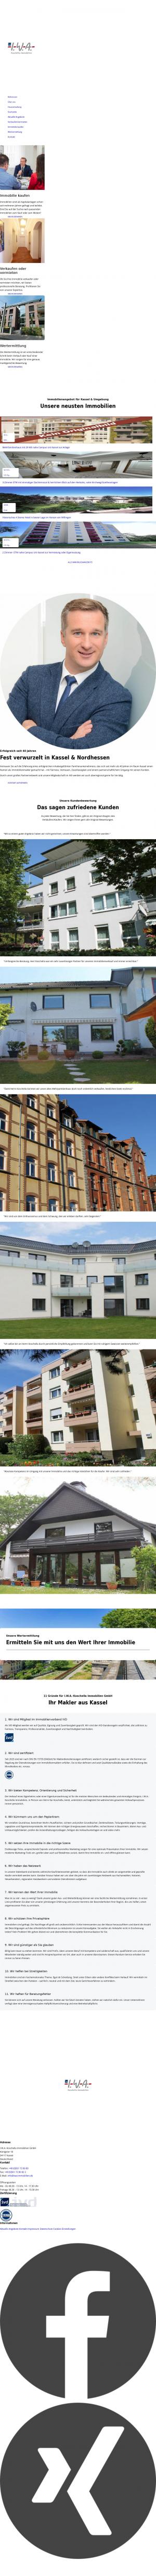 www.iwa-immobilien.de